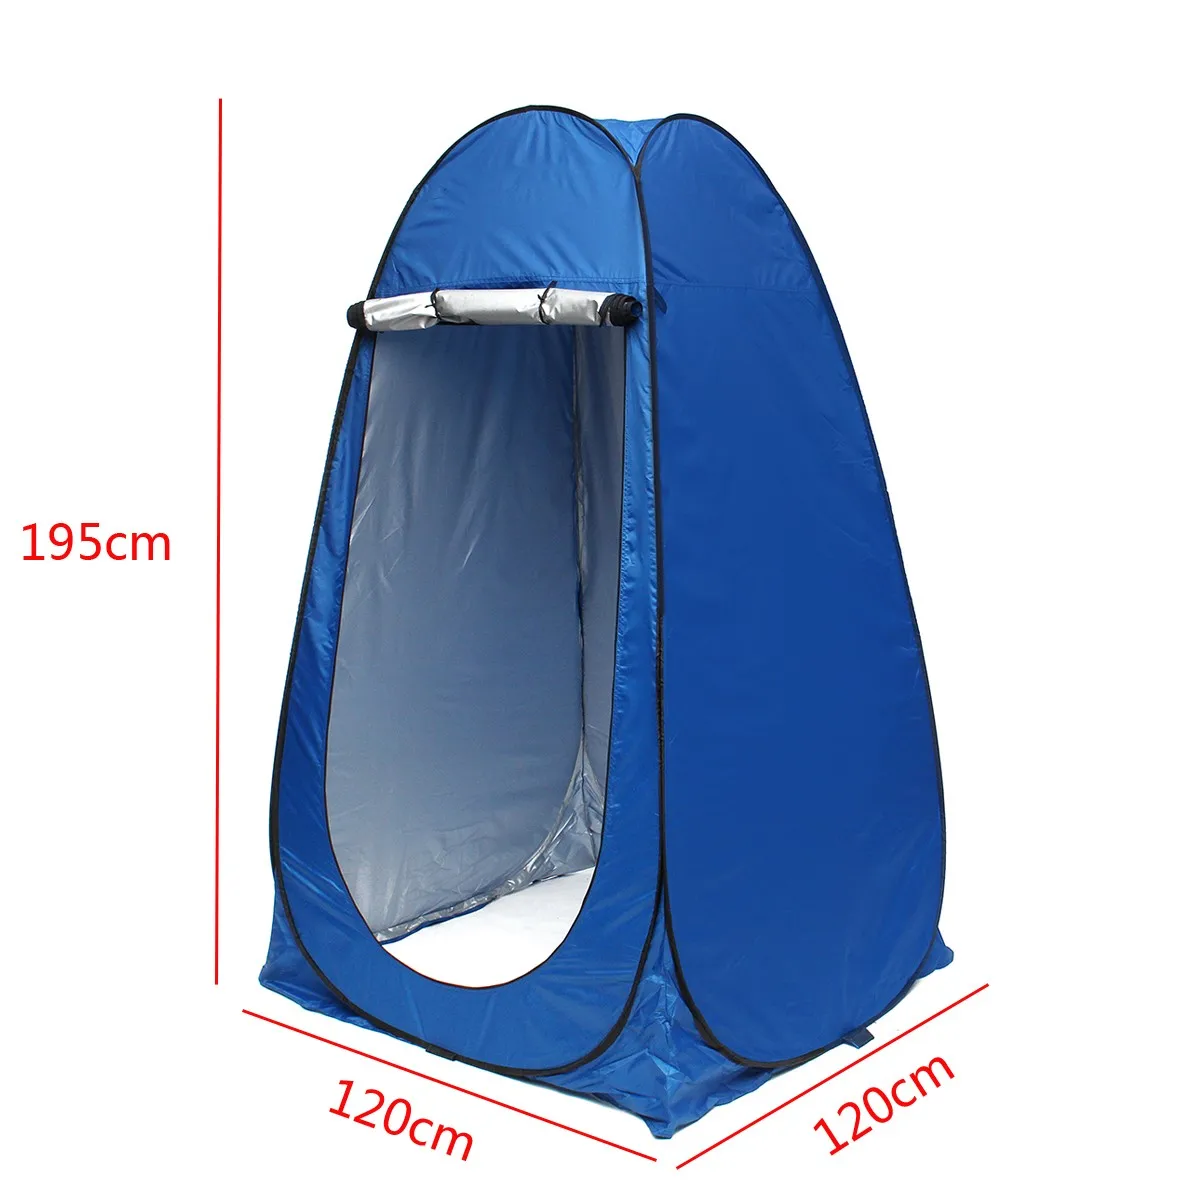 1 шт. сборка всплывающий открытый кемпинг душ палатка простой мобильный туалет туалетный тент подходит для отдыха или купания в дикой палатке